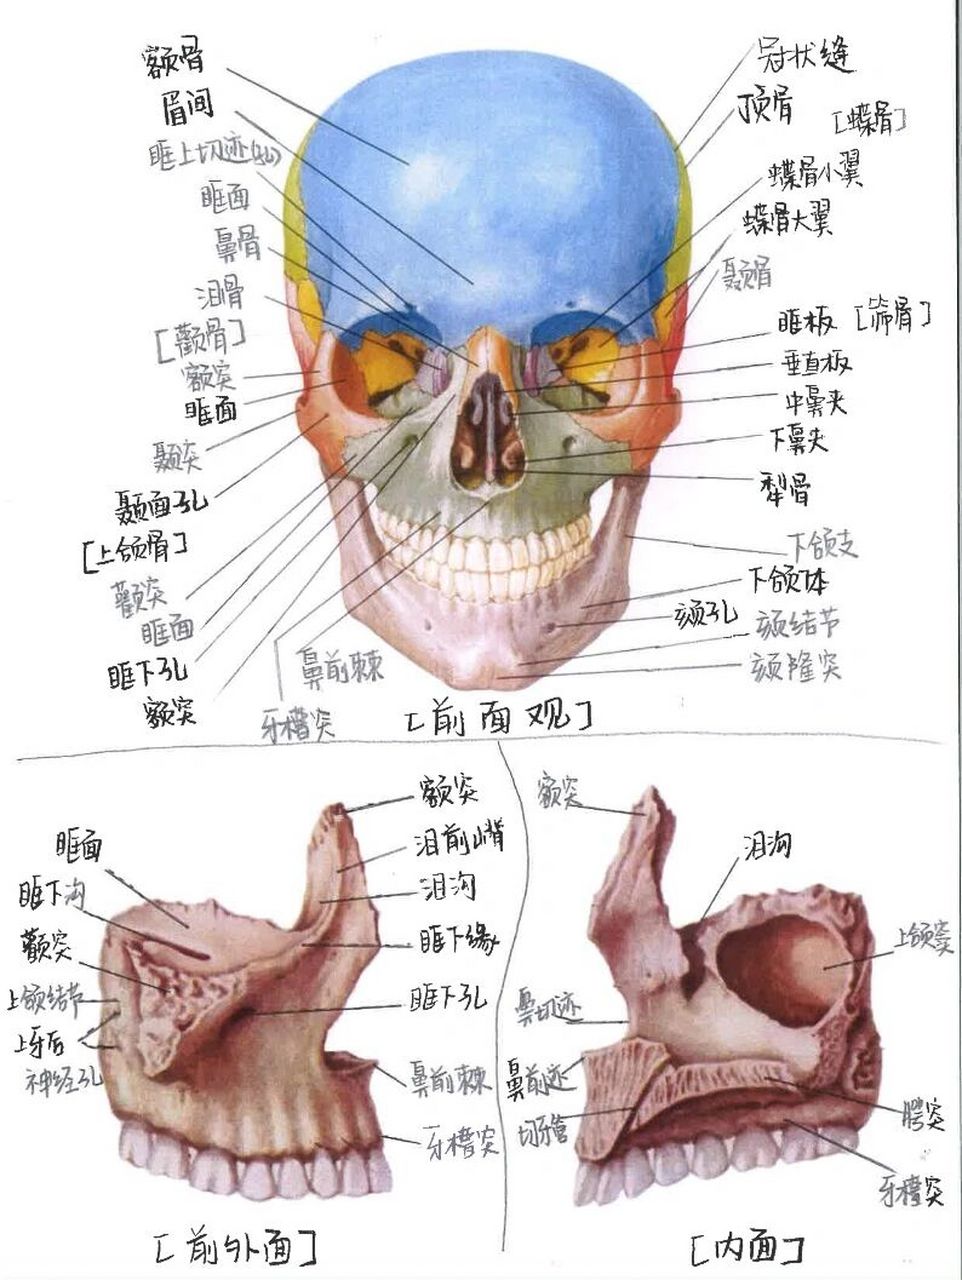 【8】种牙必看科普——上颌骨解剖结构 上颌骨位于颜中面部,是面部